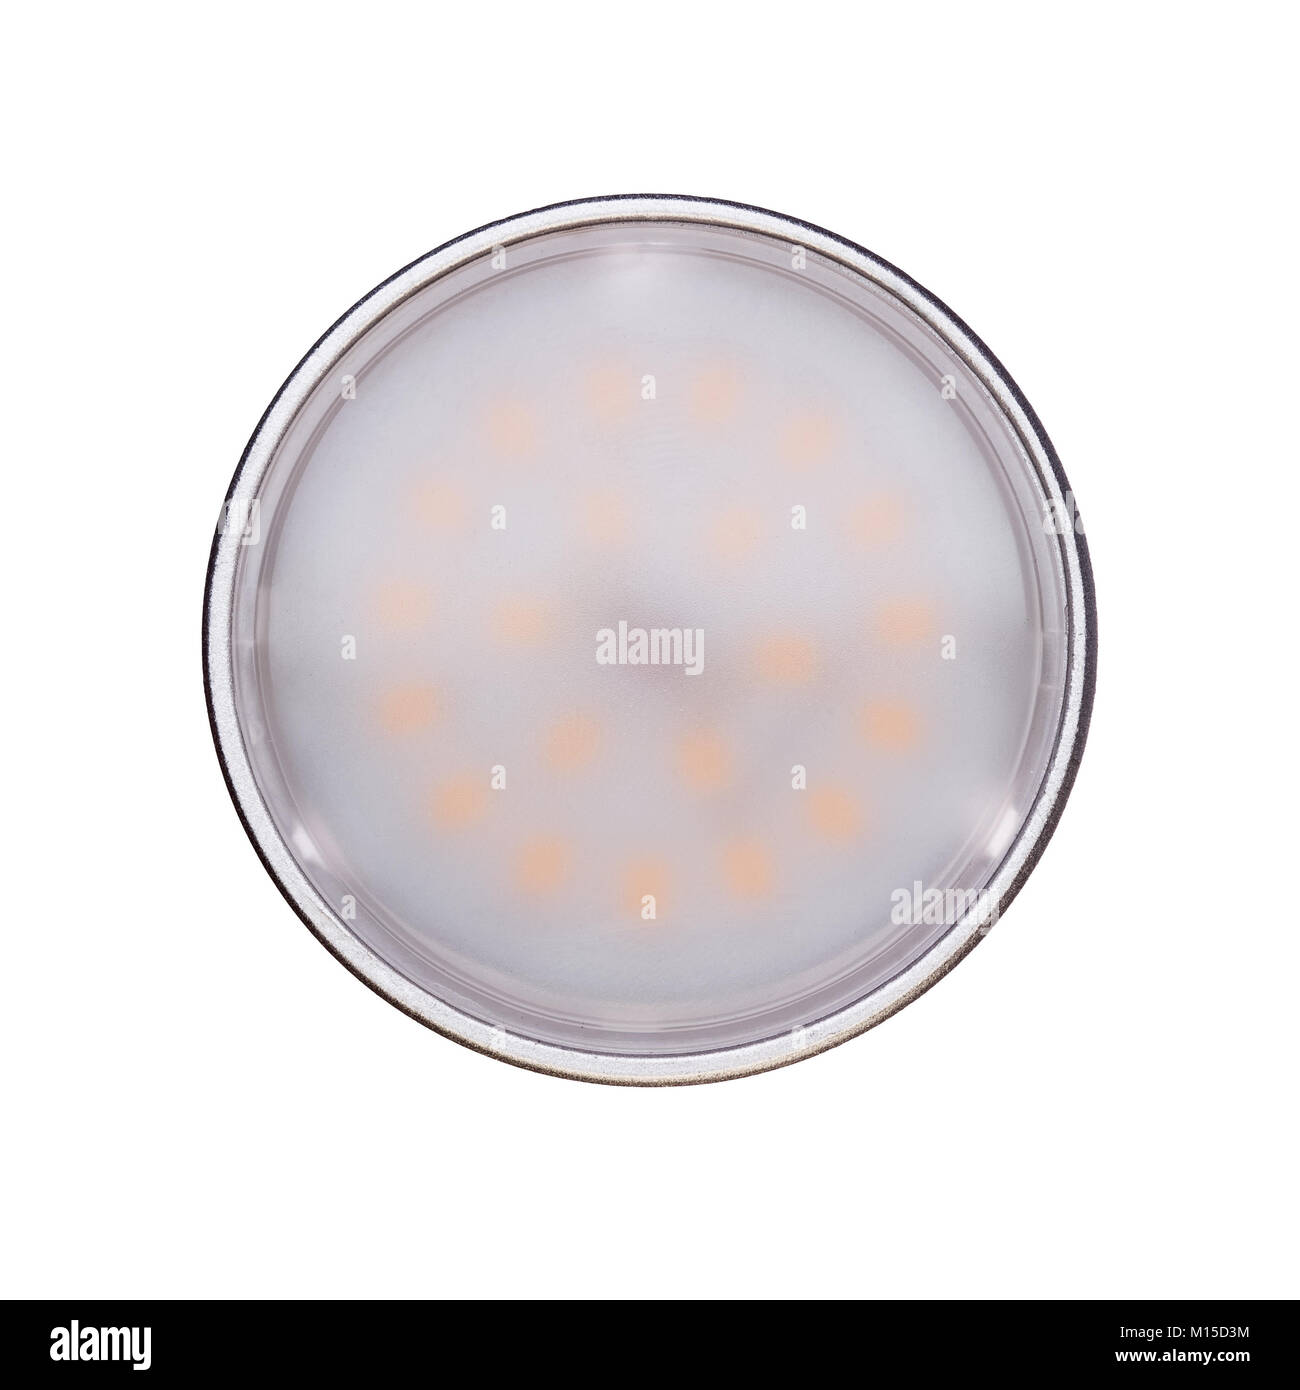 Lampadina a LED closeup photo isolato su bianco Foto Stock